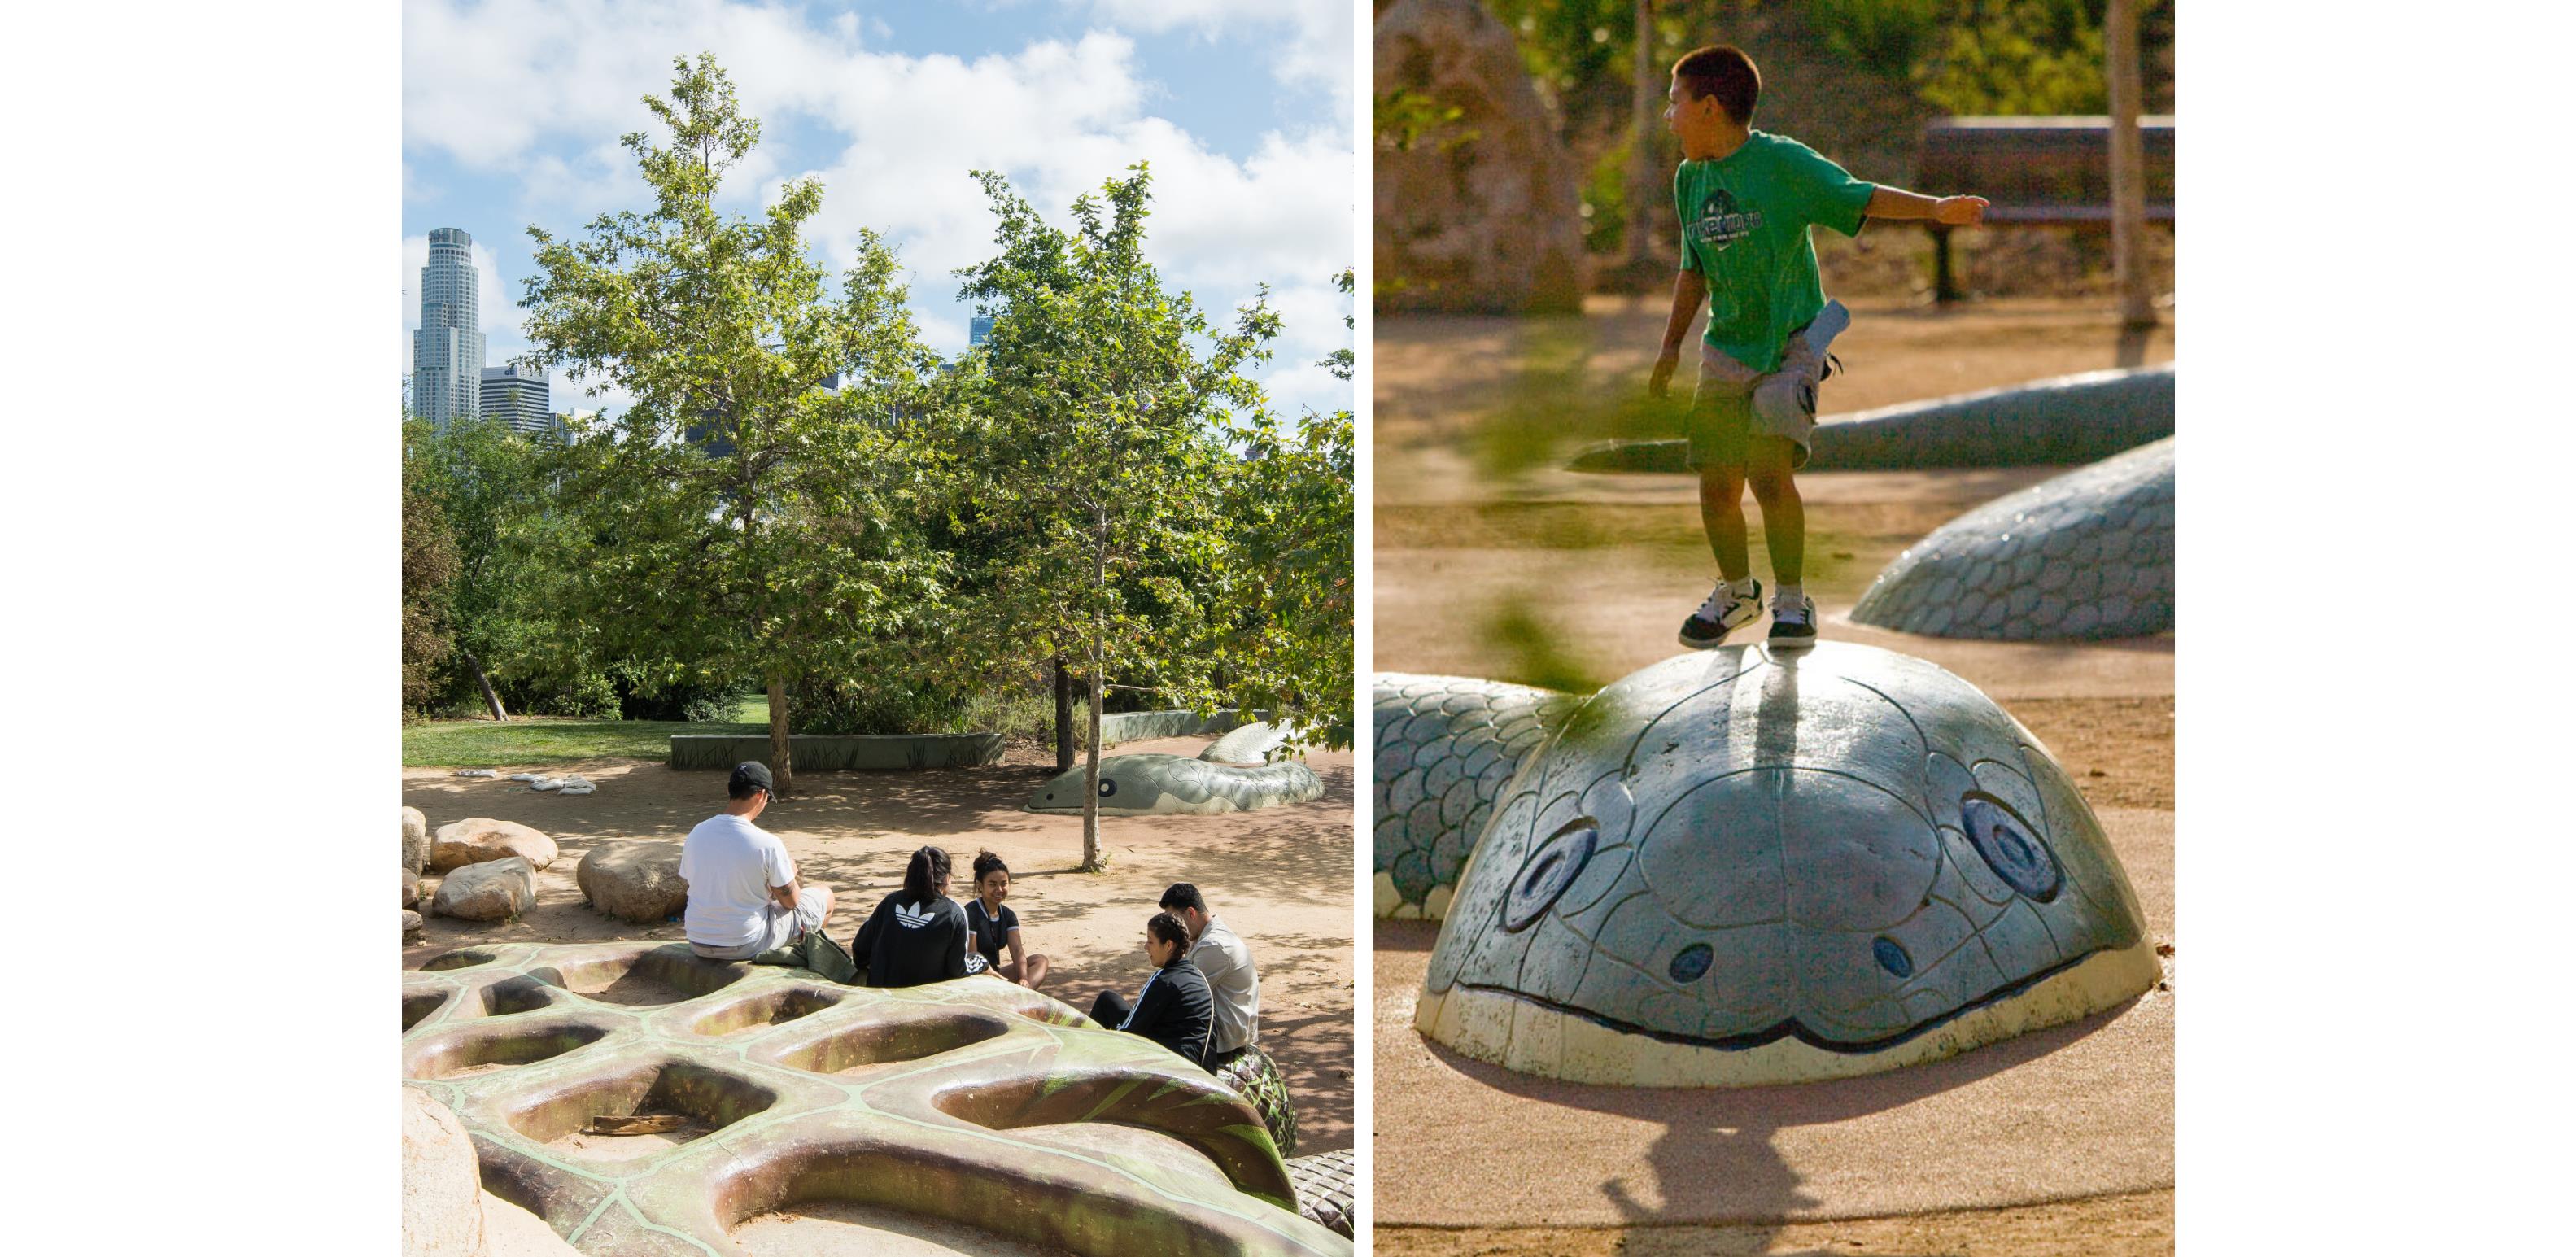 The children’s adventure area incorporates custom-designed play sculptures.